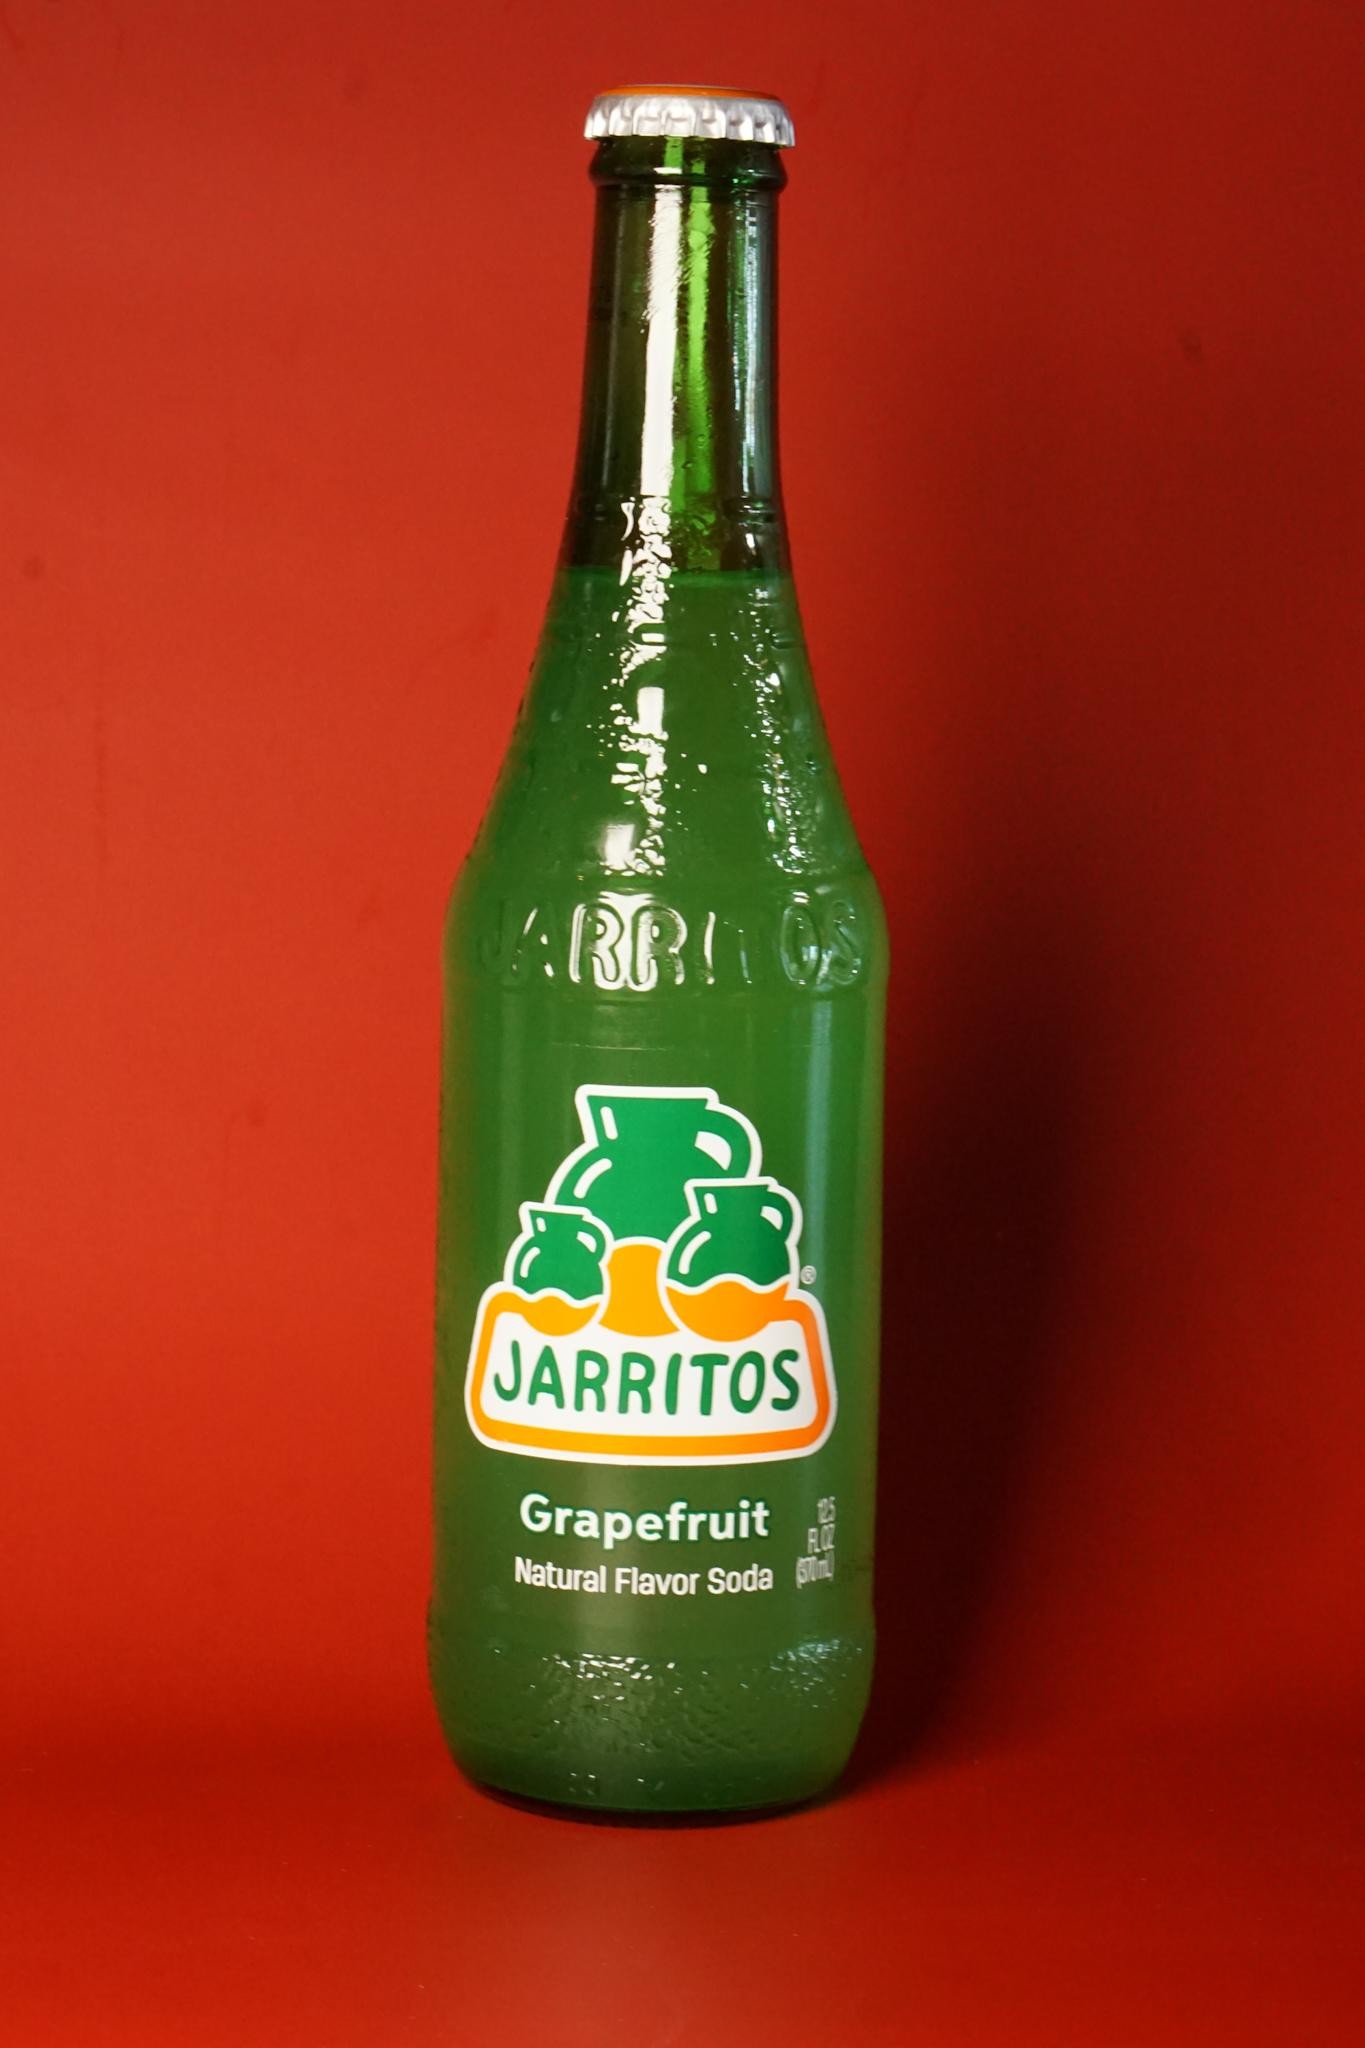 Flavored Jarrito